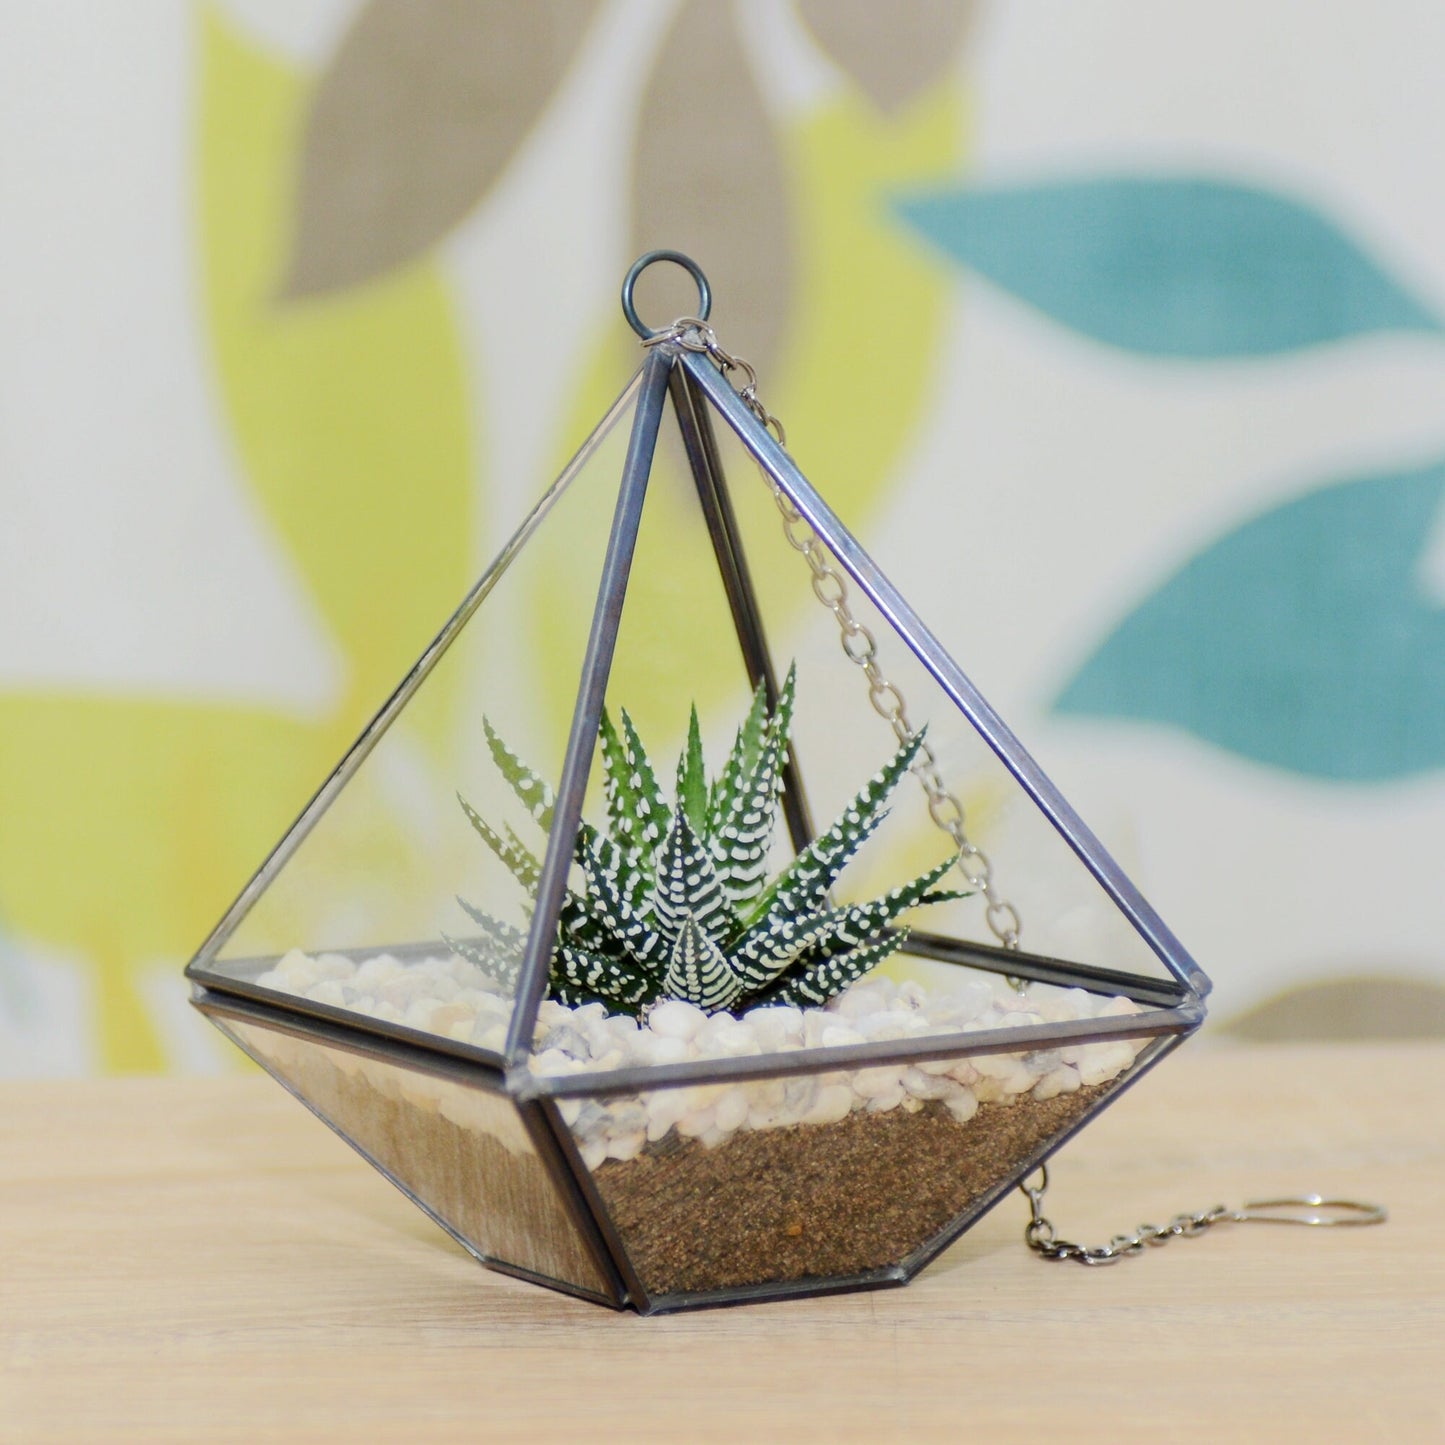 Succulent Terrarium Kit in a Hanging Geometric Glass Vase